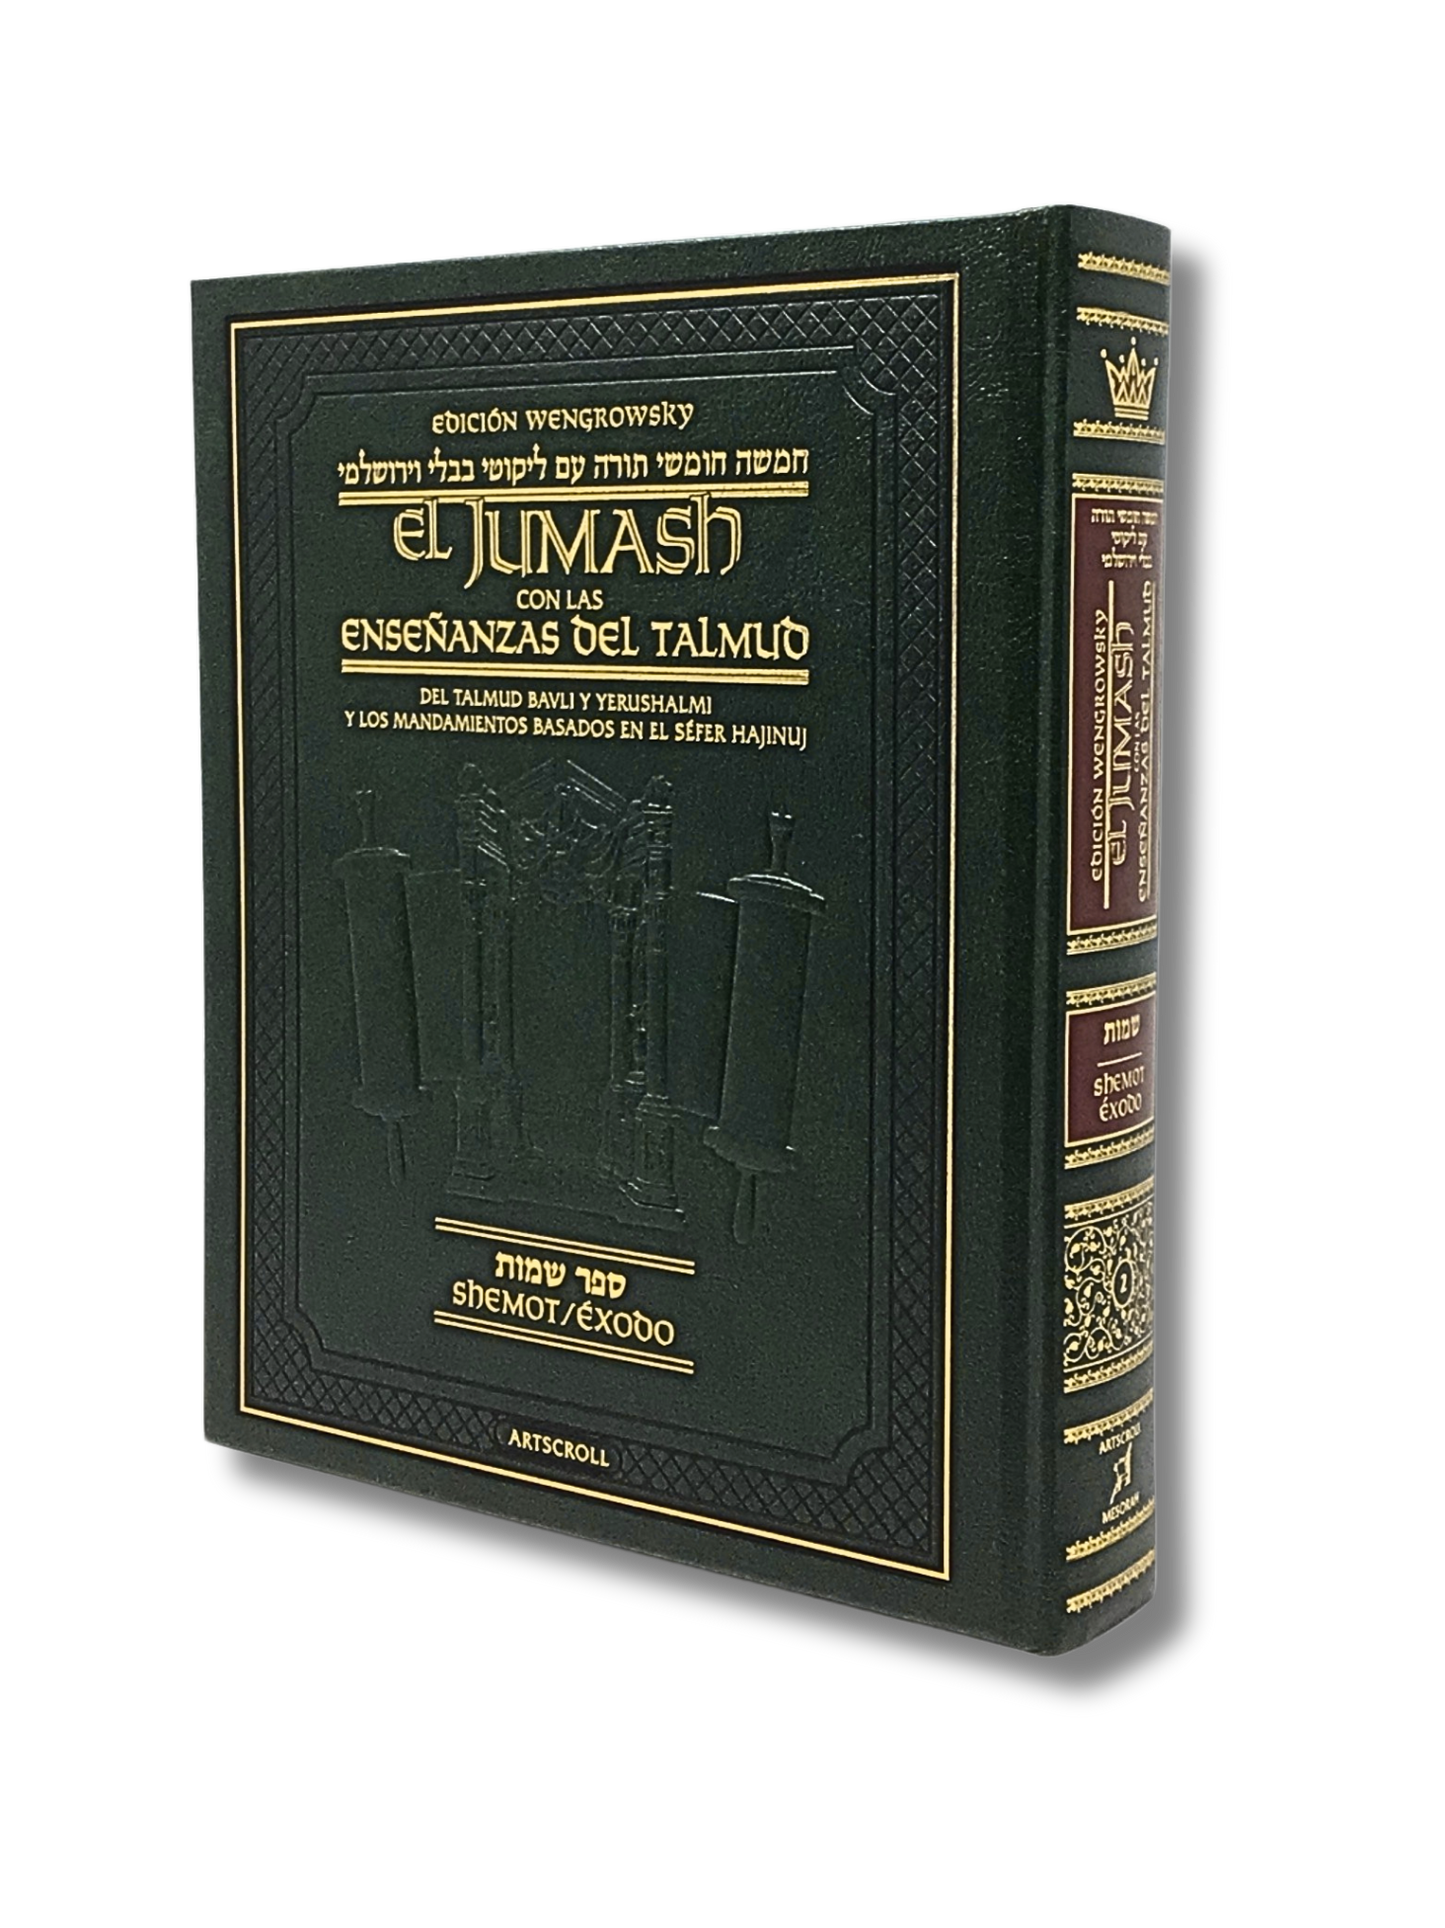 El Jumash Artscroll con el Midrash Shemot